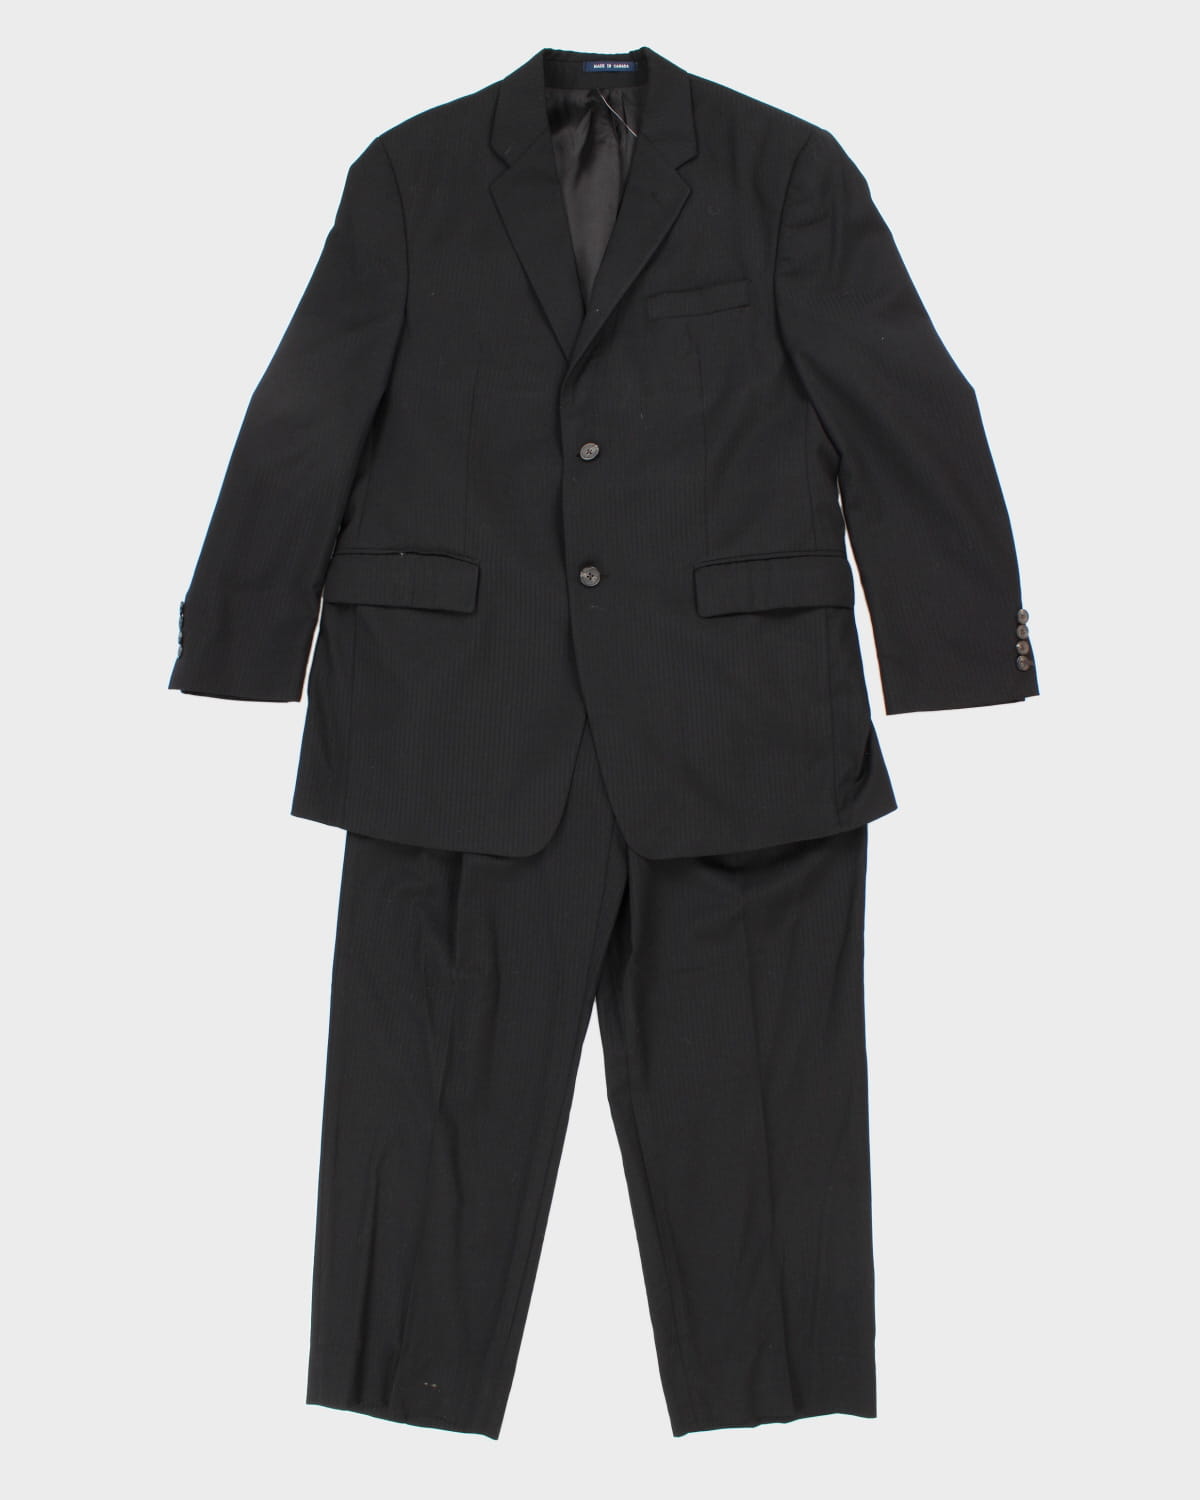 Vintage Chaps Black Suit Jacket Set